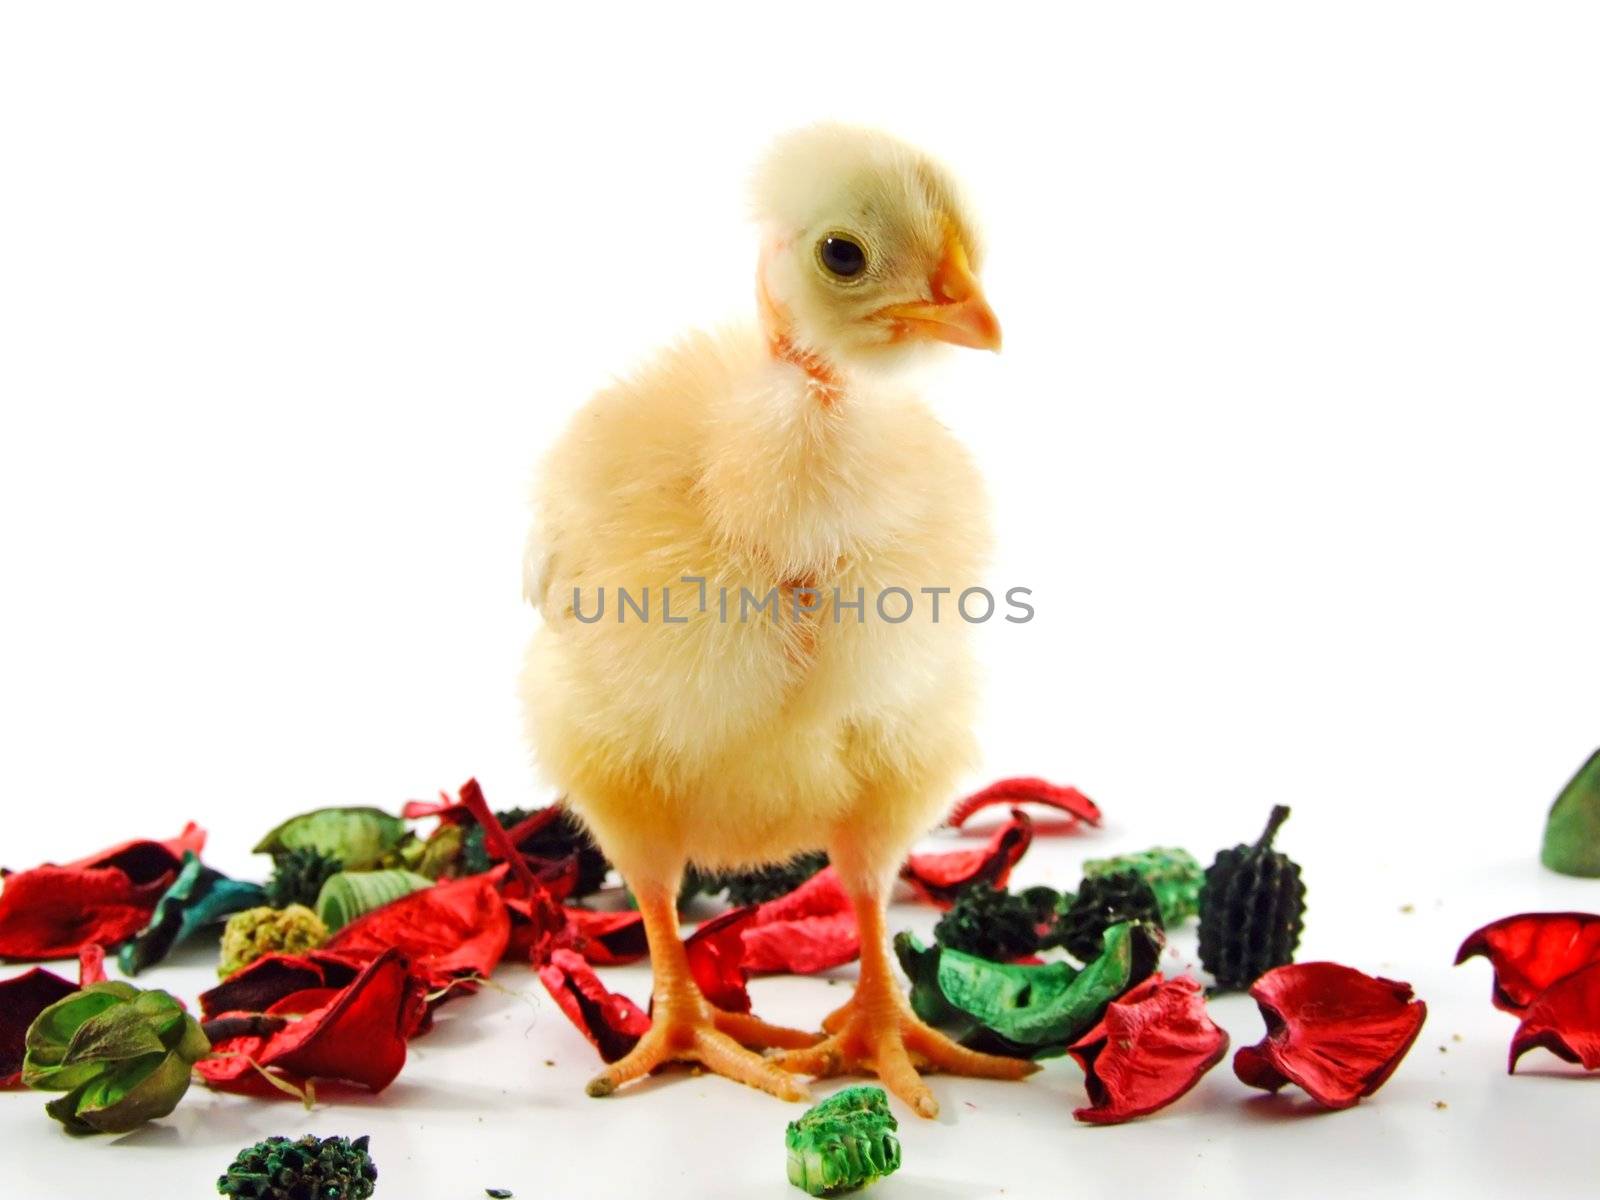 Baby chicken by PauloResende